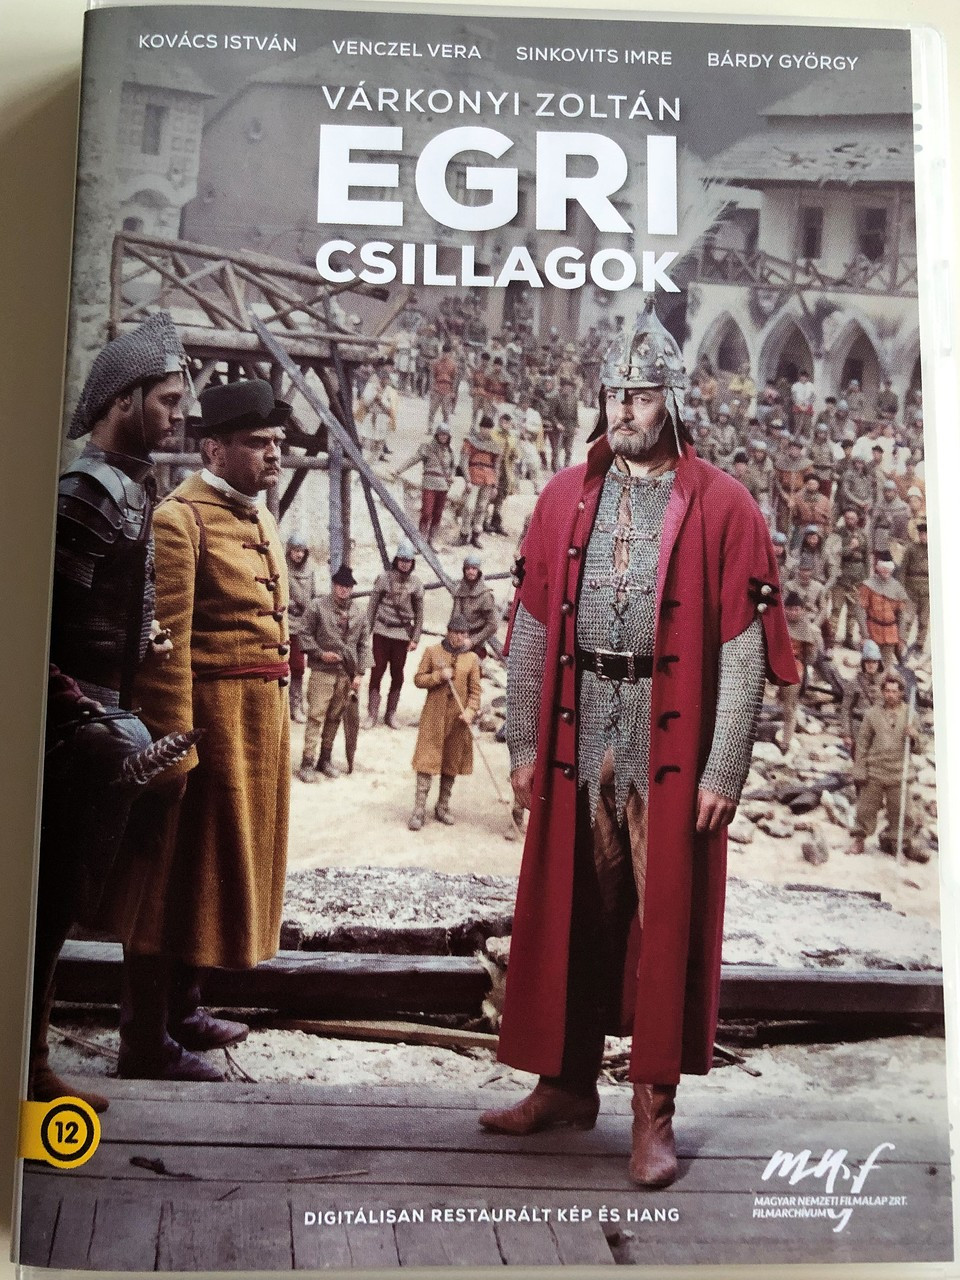 Egri csillagok - 2 DVD 1968 The Lost Talisman / With Extra Features /  Directed by Várkonyi Zoltán / Digitálisan felújított kép és hang / Magyar  Nemzeti Filmarchívum kiadó, 2019 - bibleinmylanguage